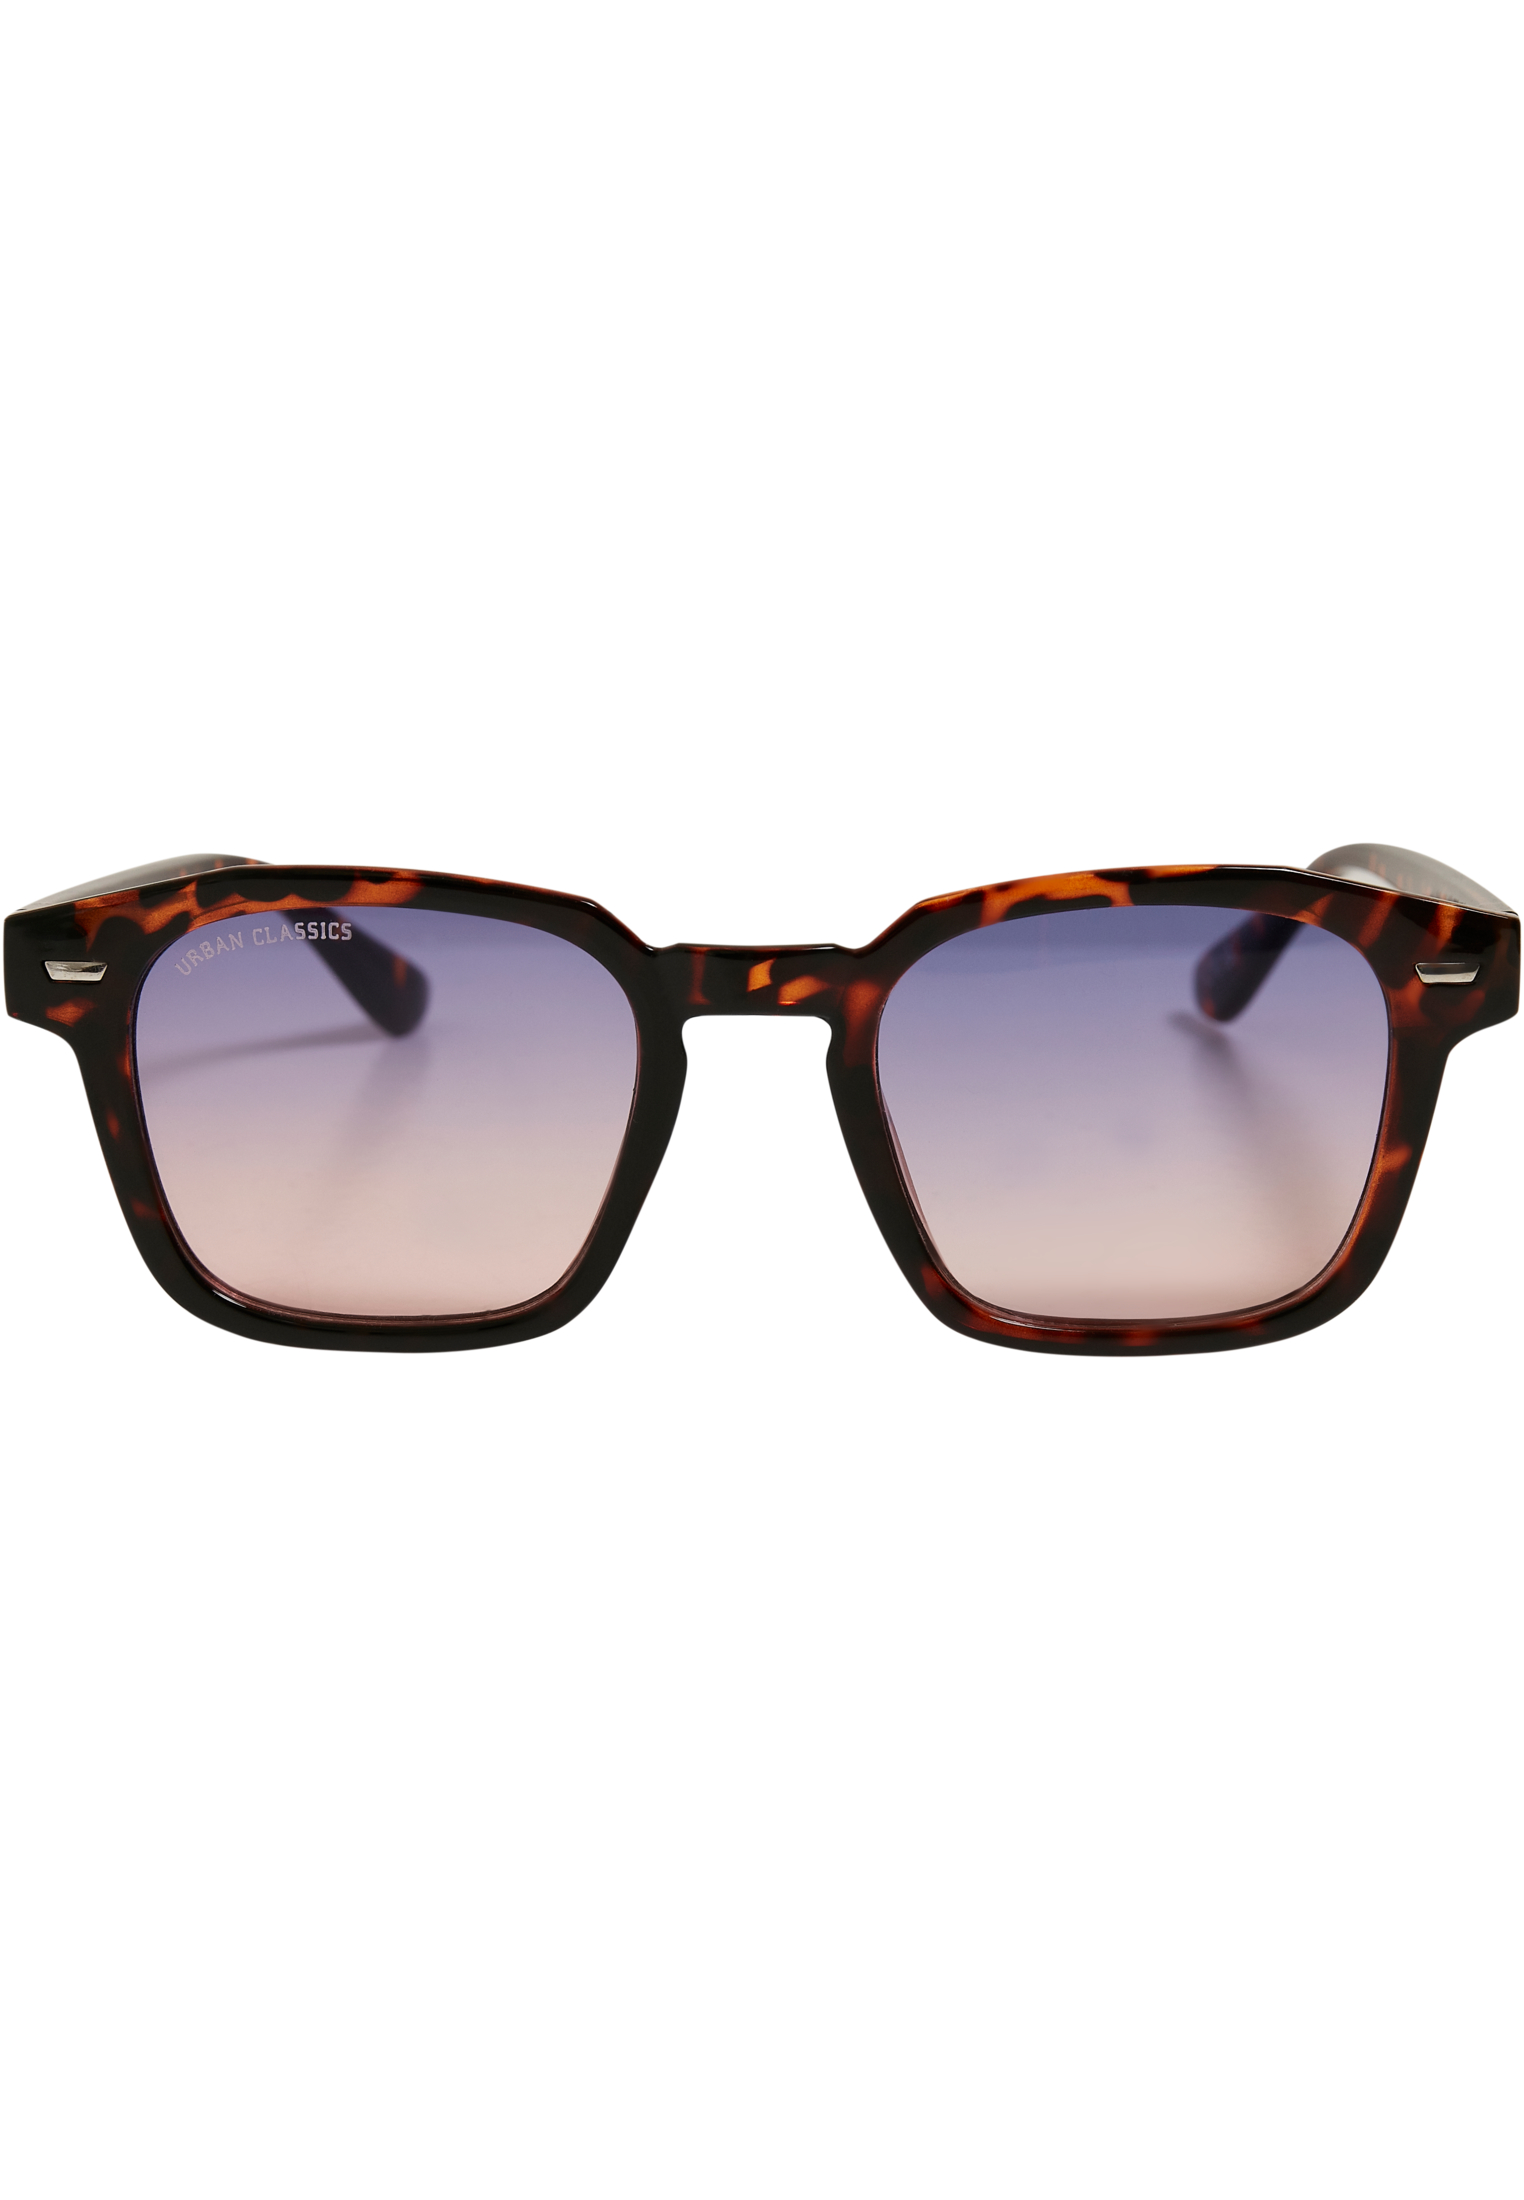 Sunglasses Case-TB5210 Maui With